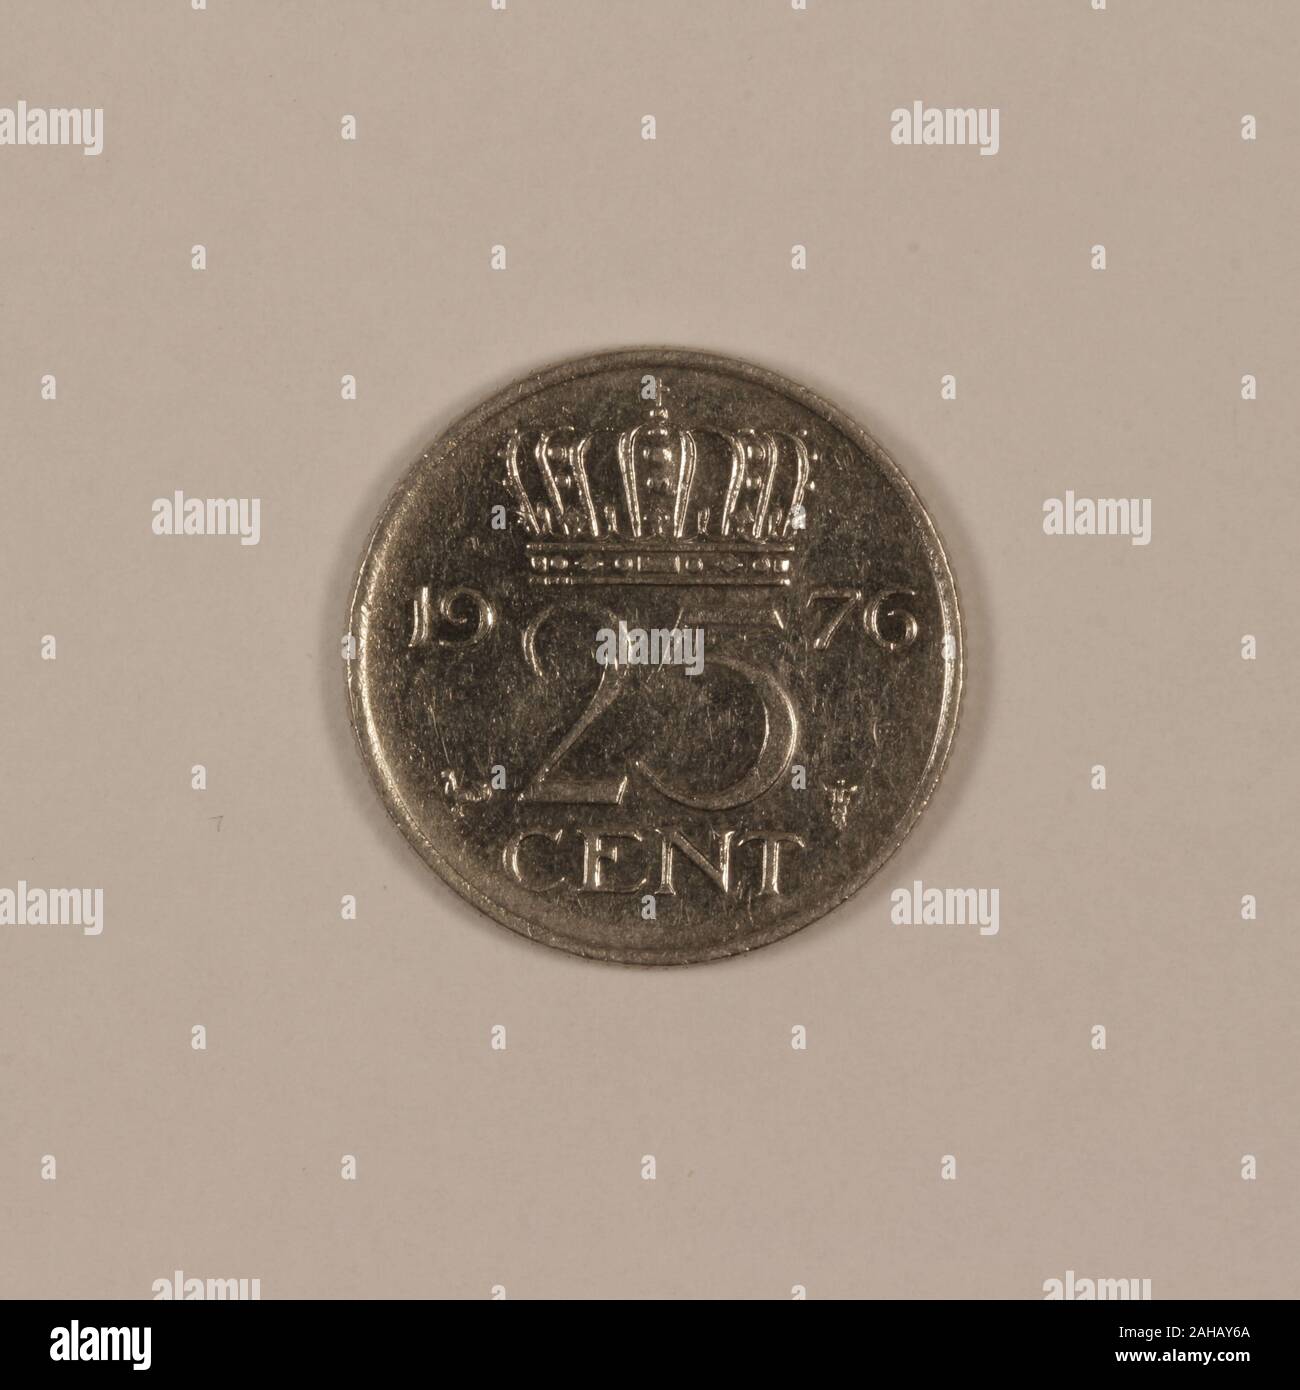 Vorderseite einer ehemaligen Holländischen 25 Cent Münze Stock Photo